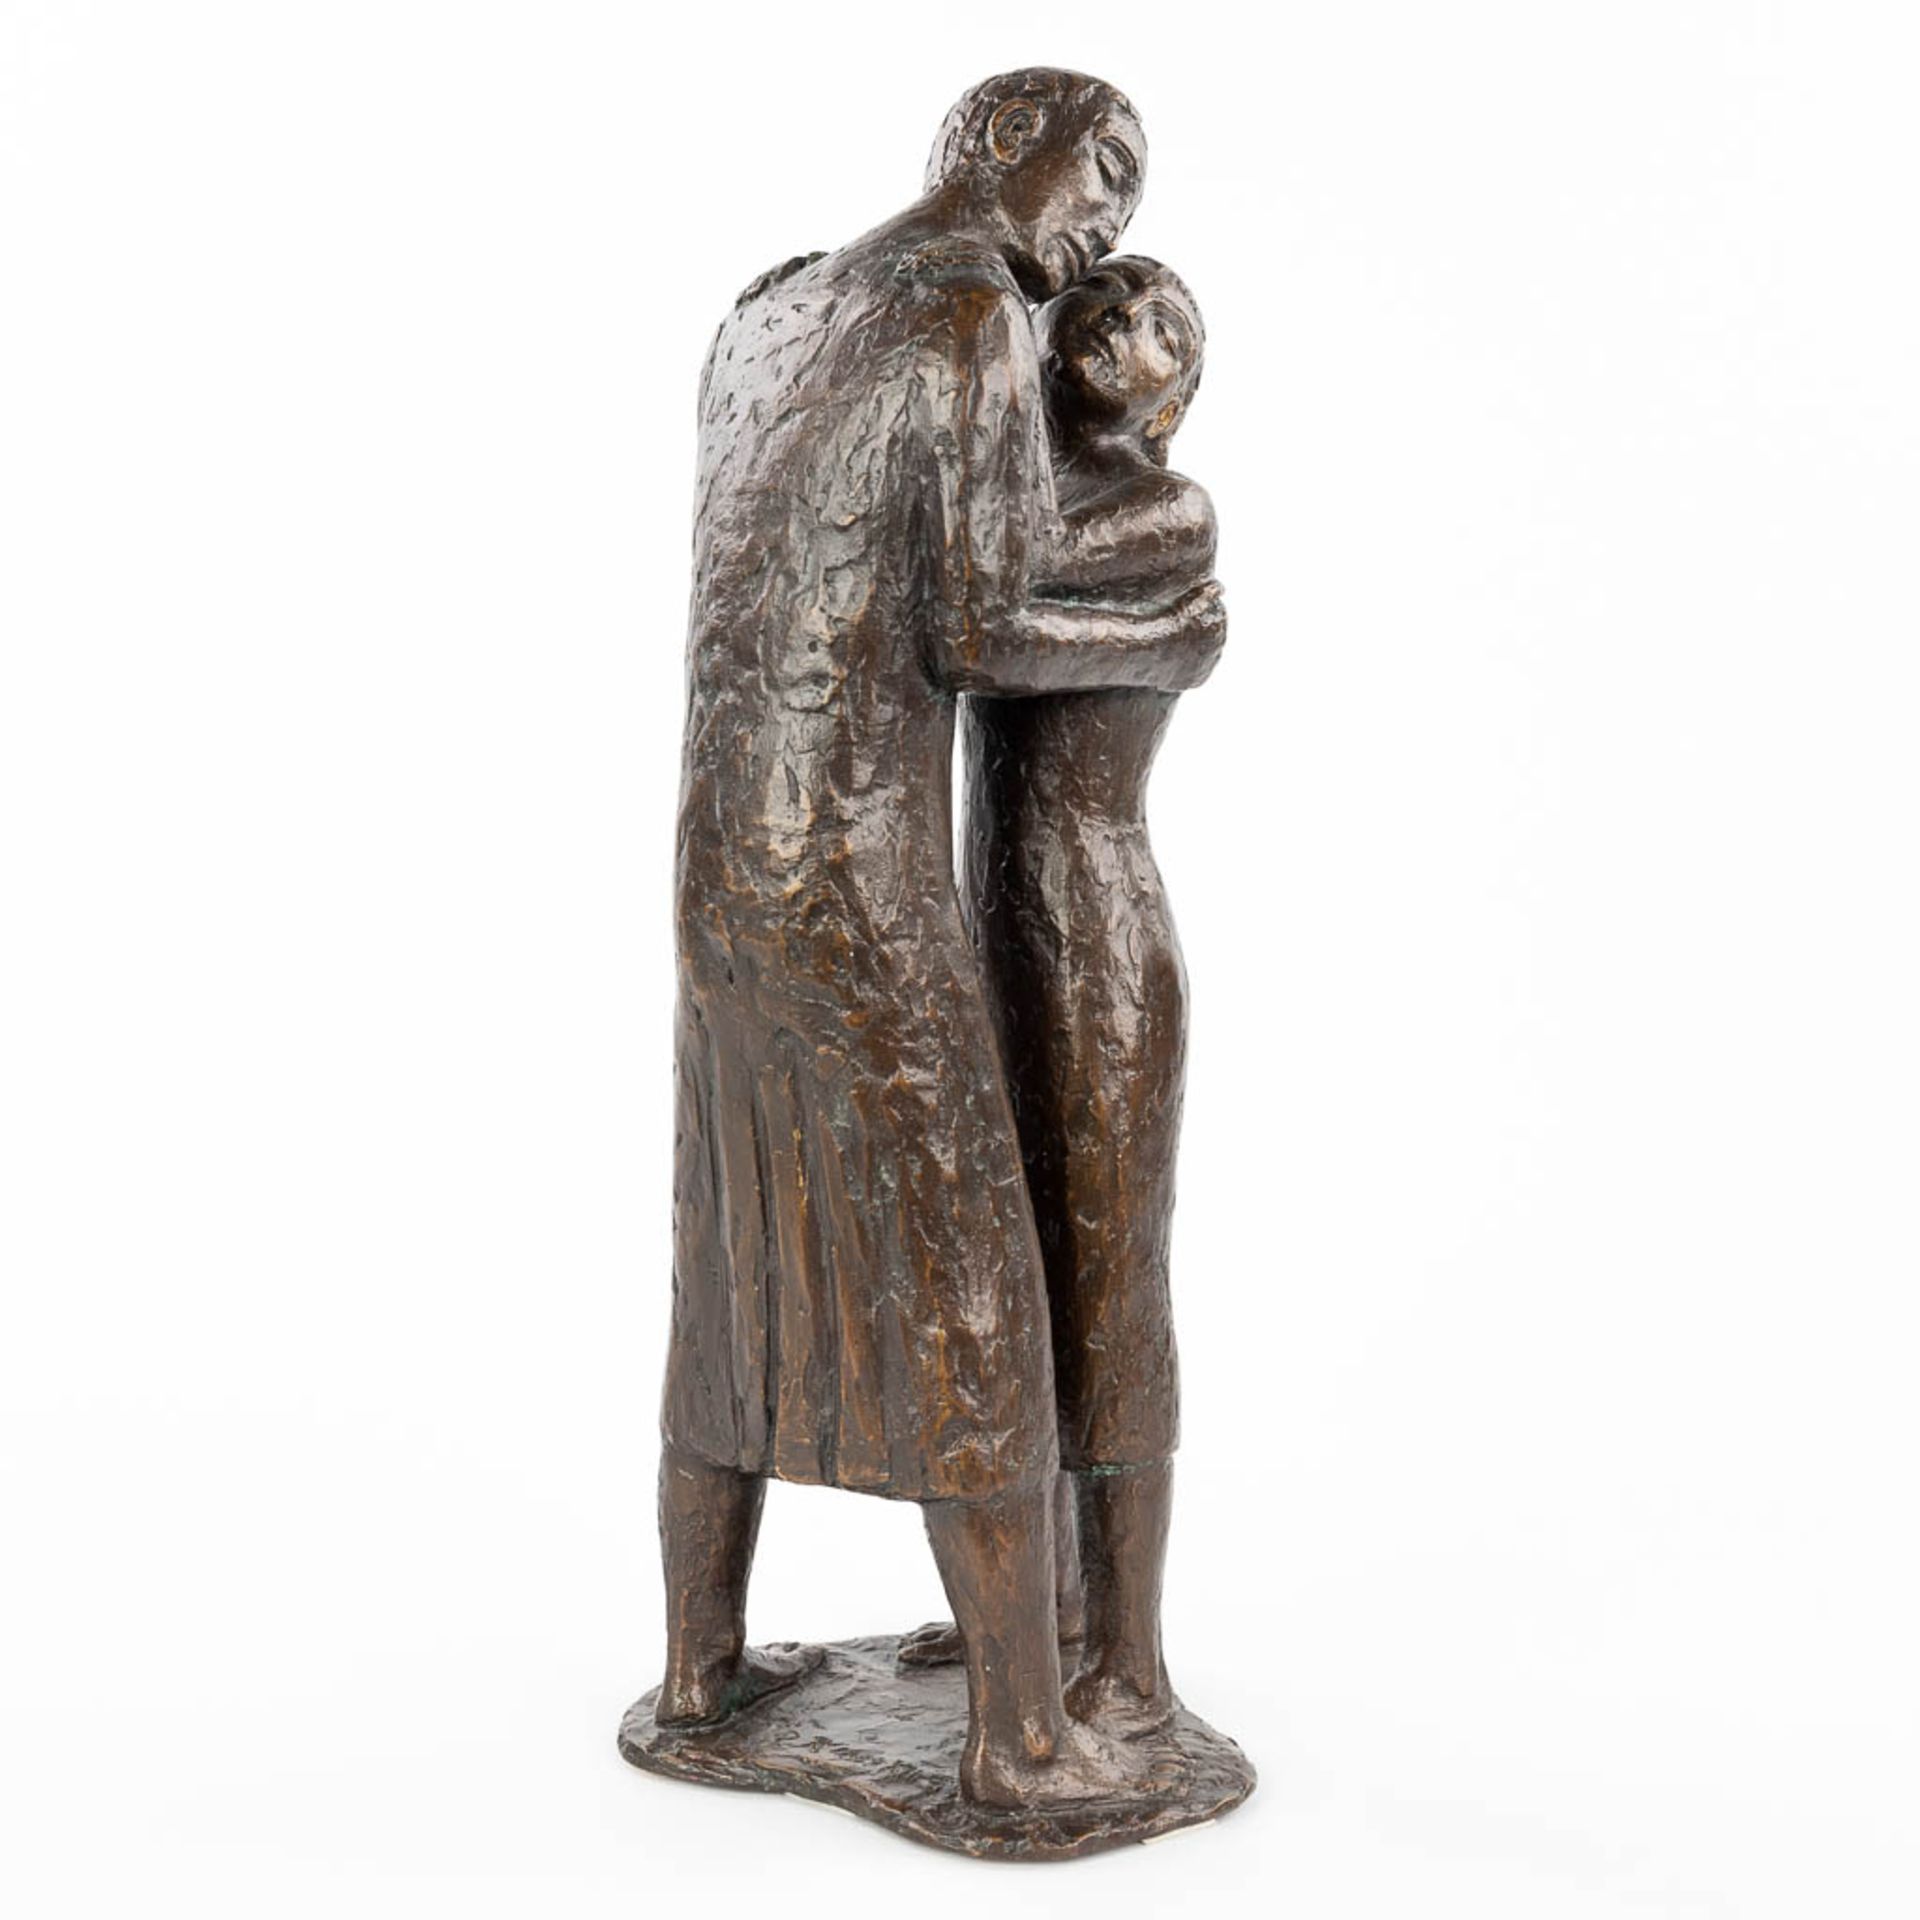 Richard KESSLER (1916) 'Der Abschied' ' Goodbye', patinated bronze. (H:41cm)